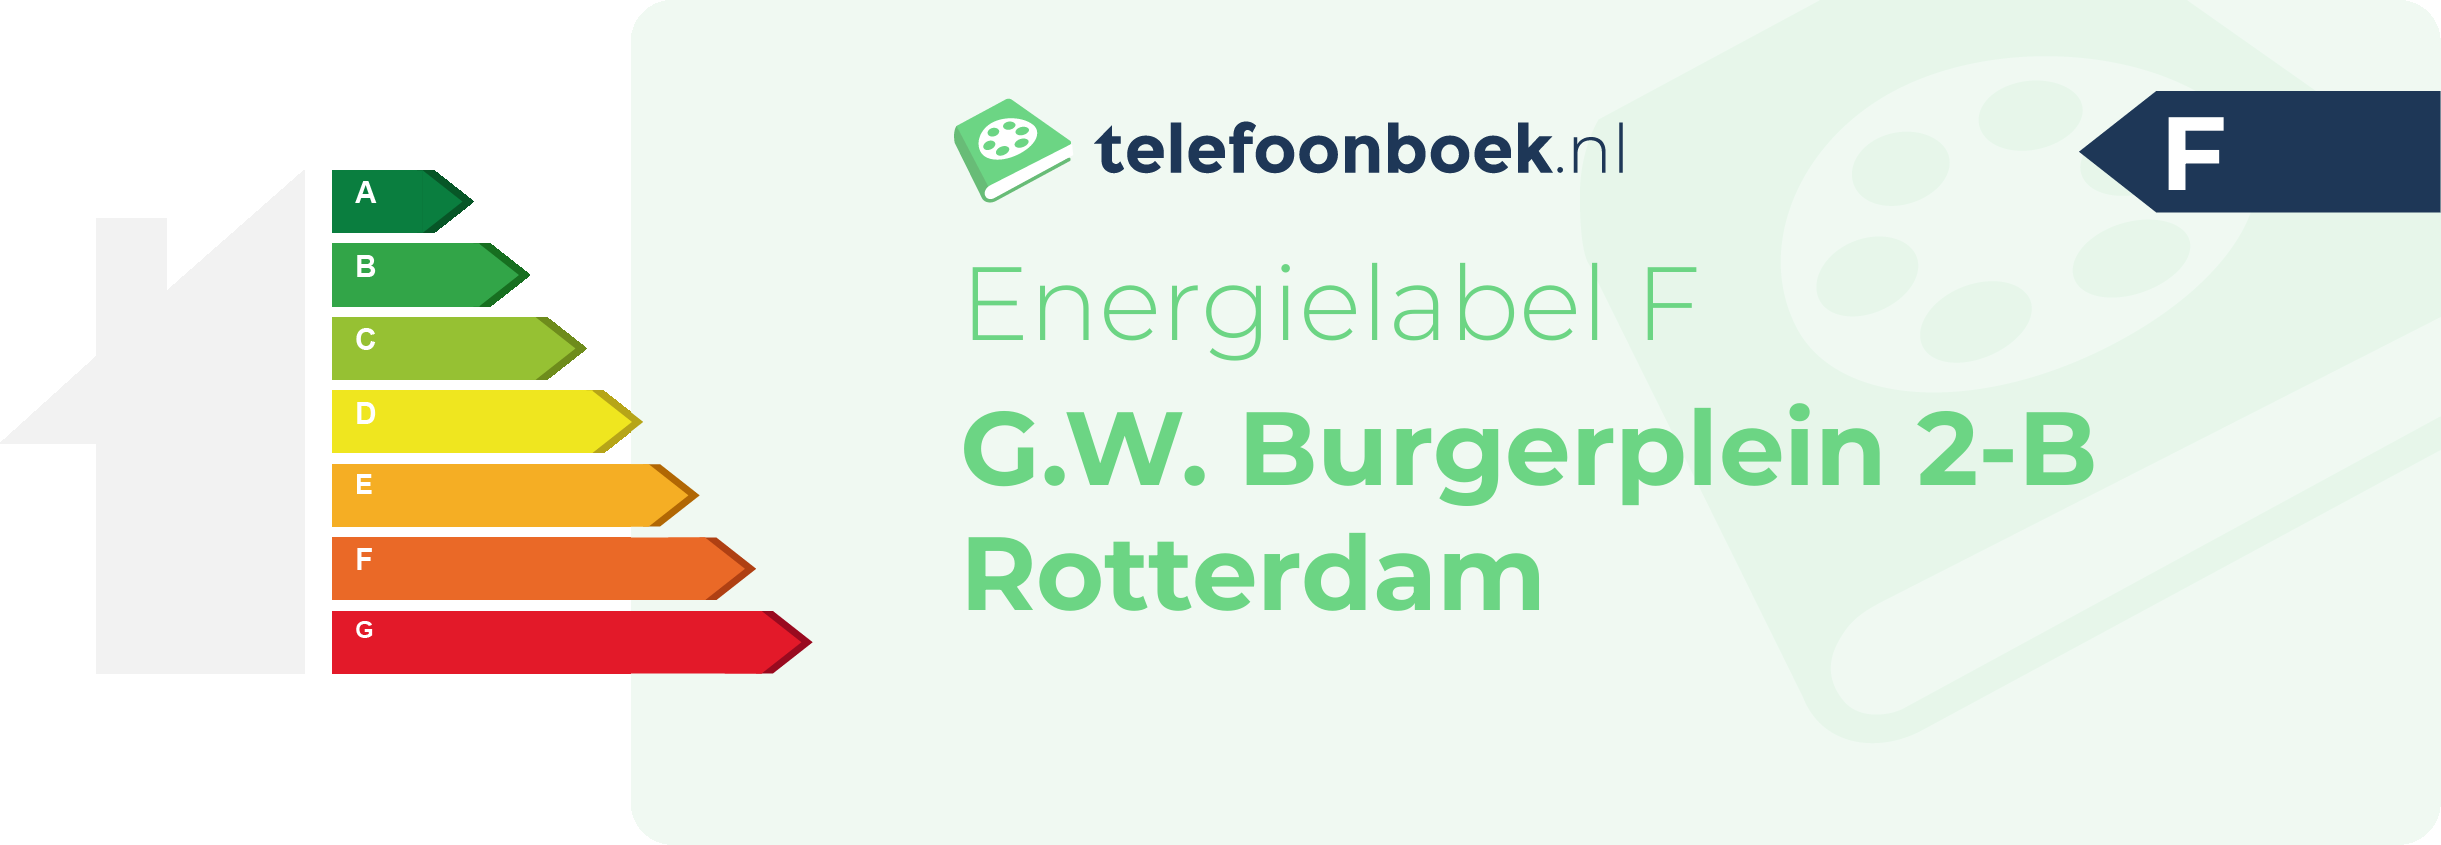 Energielabel G.W. Burgerplein 2-B Rotterdam